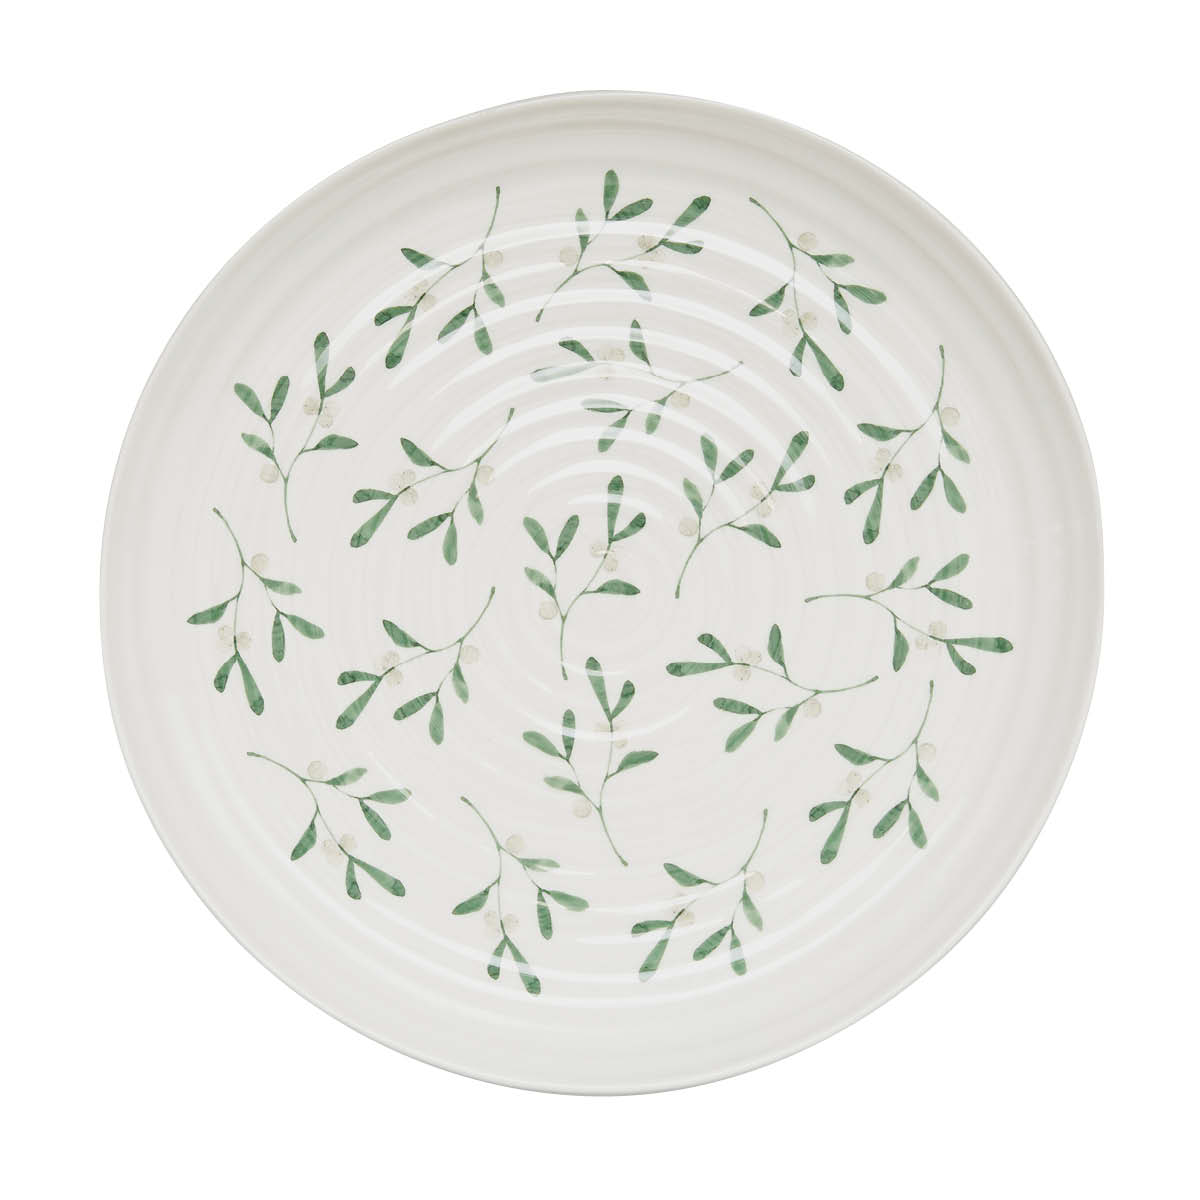 Sophie Conran Mistletoe Round Platter